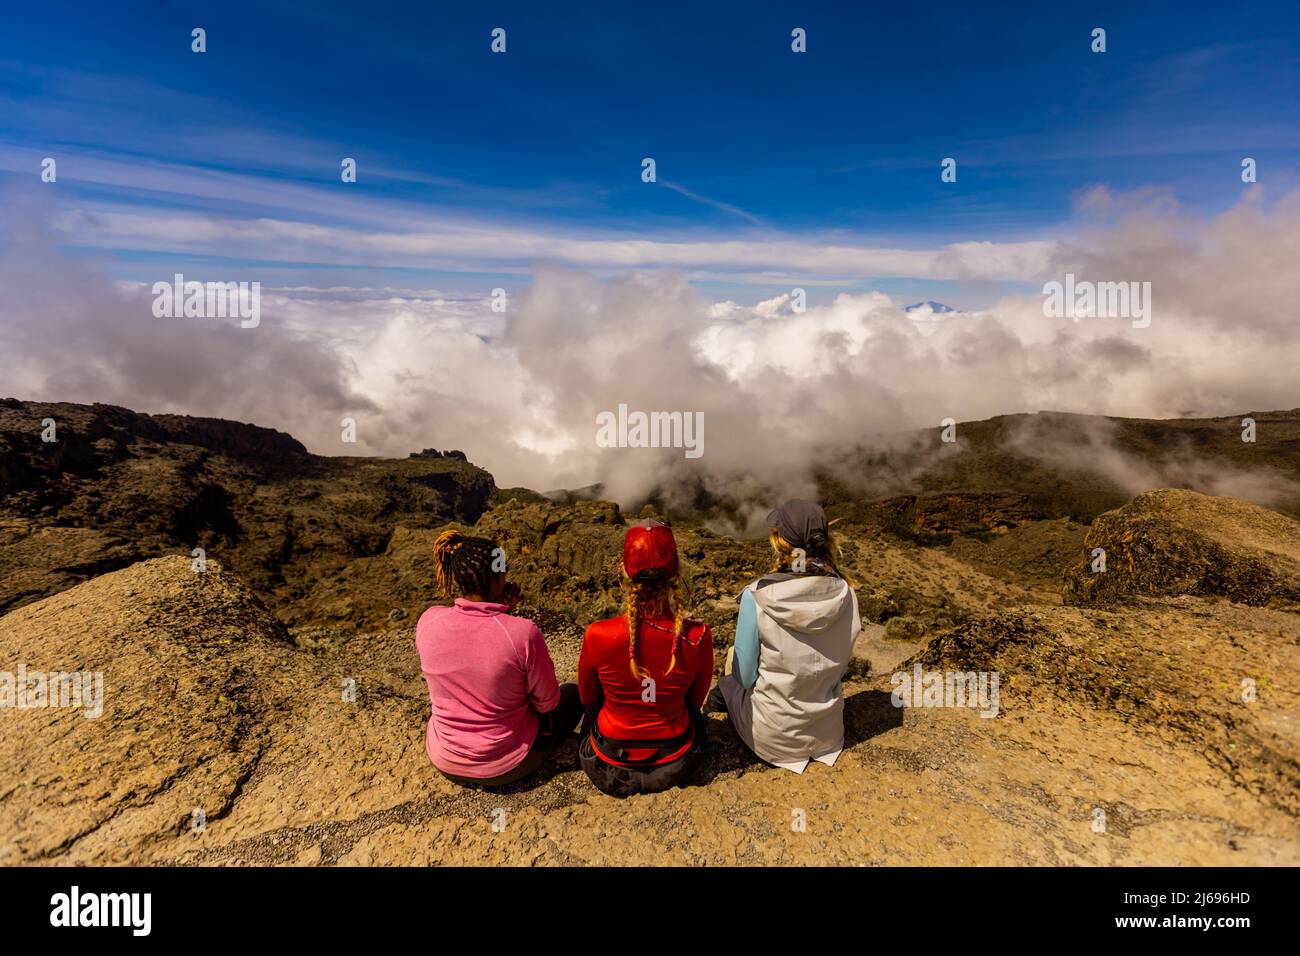 Les femmes ont pris le point de vue sur leur chemin jusqu'au Mont Kilimanjaro, site du patrimoine mondial de l'UNESCO, Tanzanie, Afrique de l'est, Afrique Banque D'Images